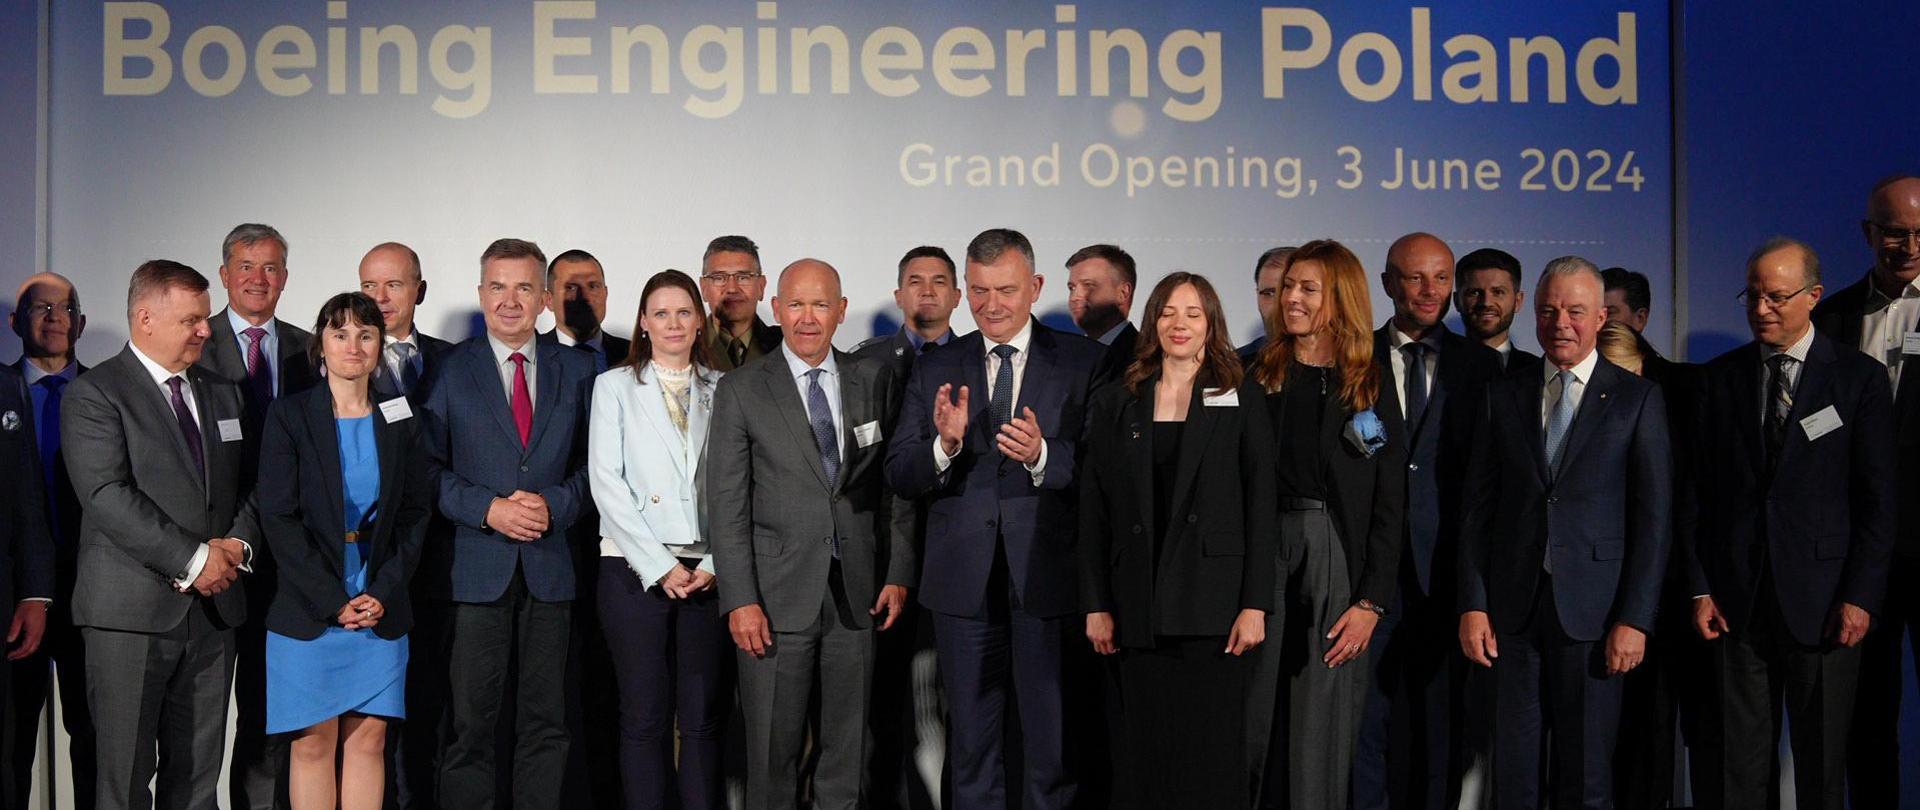 Zdjęcie zbiorowe, pod niebieską ścianą z napisem Boeing Engineering Poland stoi duża grupa osób.